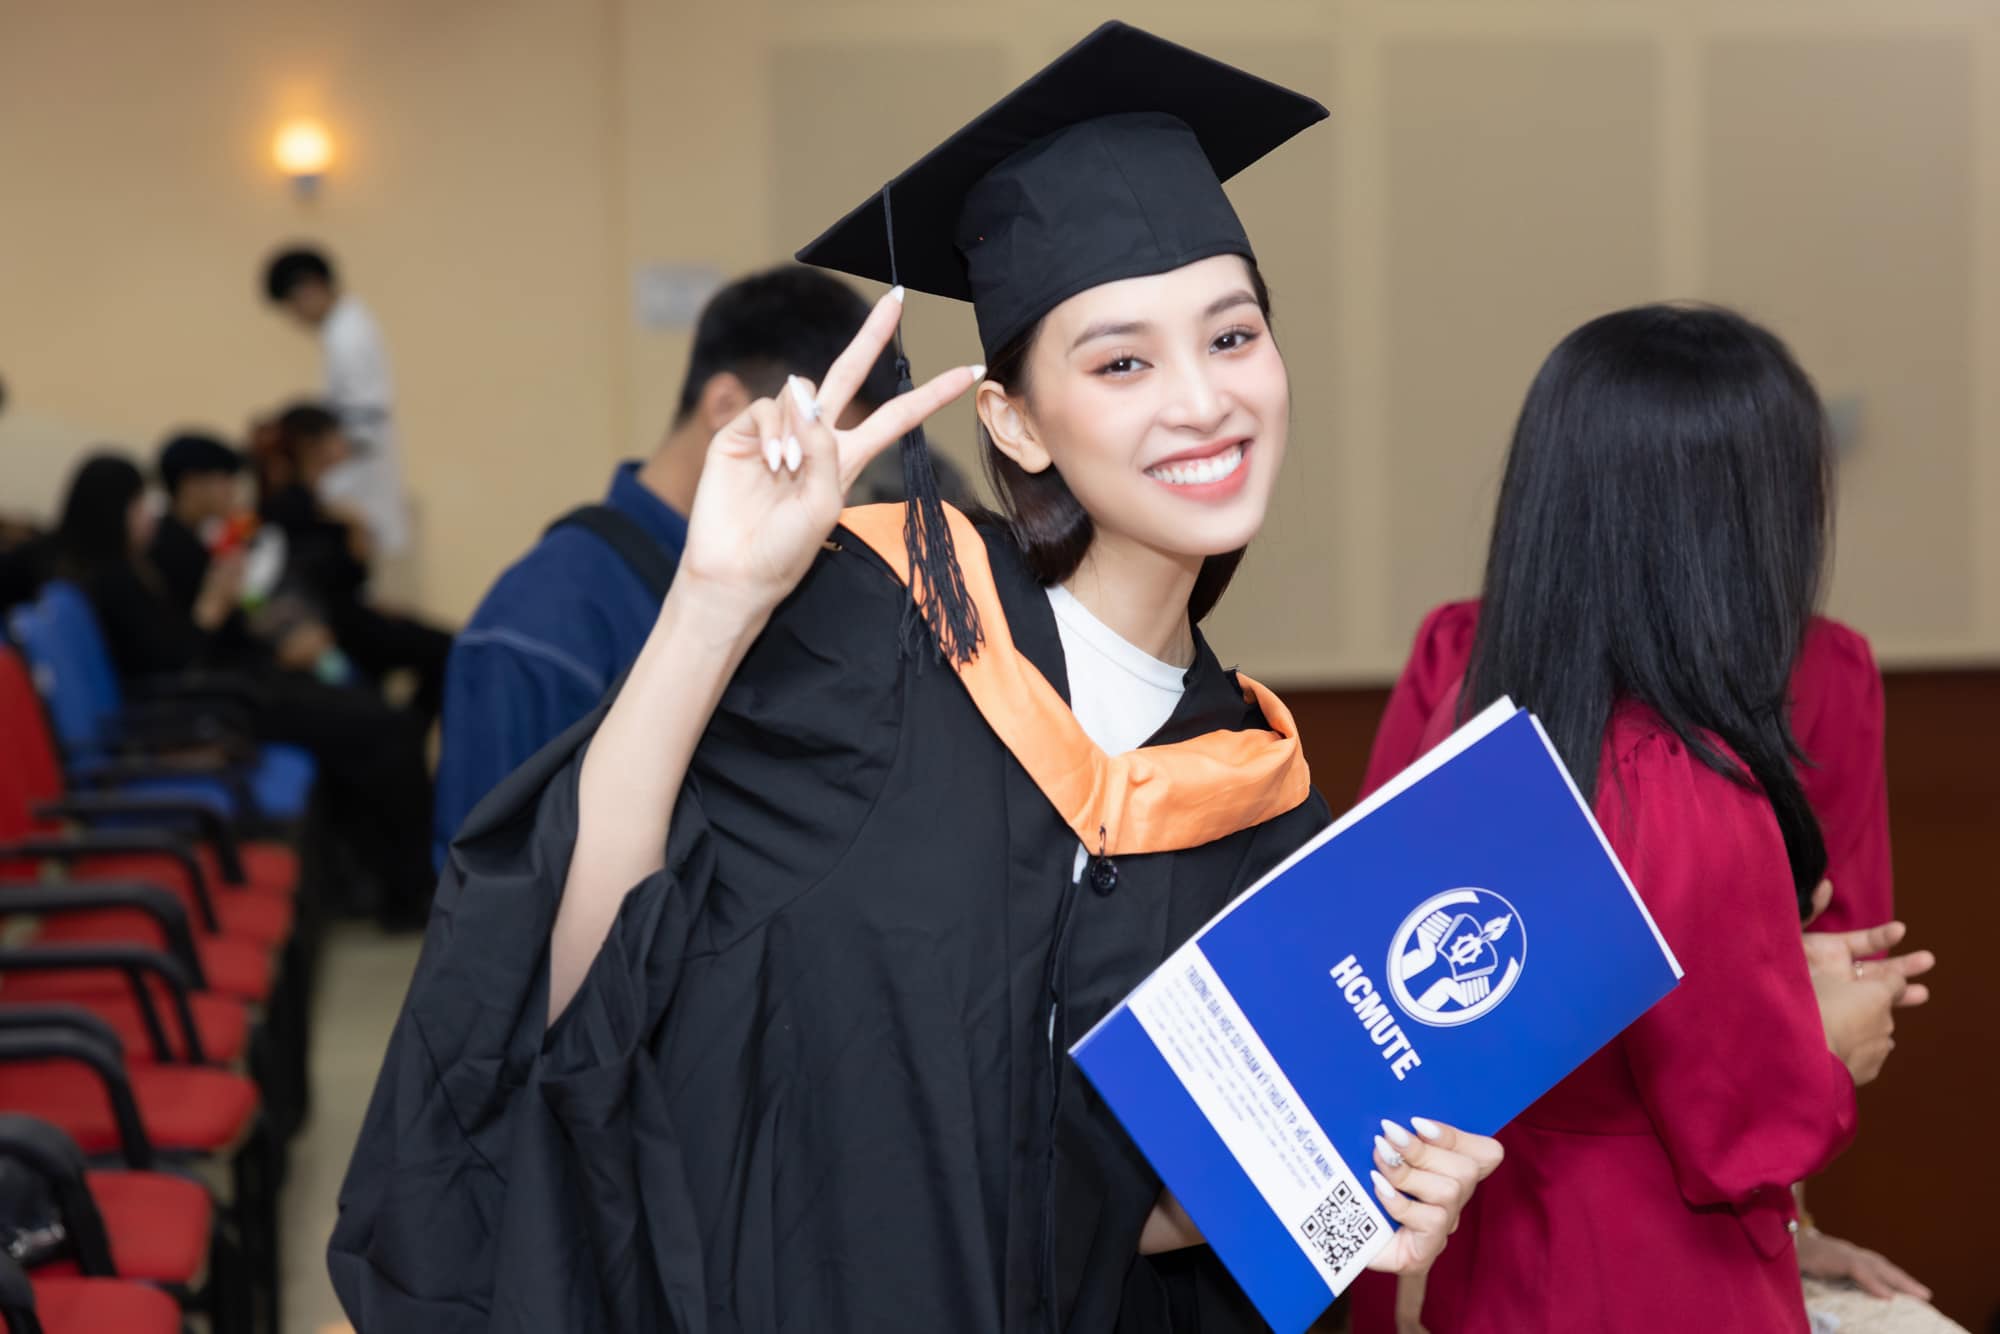 Hoa hậu Tiểu Vy rạng rỡ trong ngày tốt nghiệp đại học, ăn diện giản dị nhưng vẫn nổi bật ngời ngời - Ảnh 1.